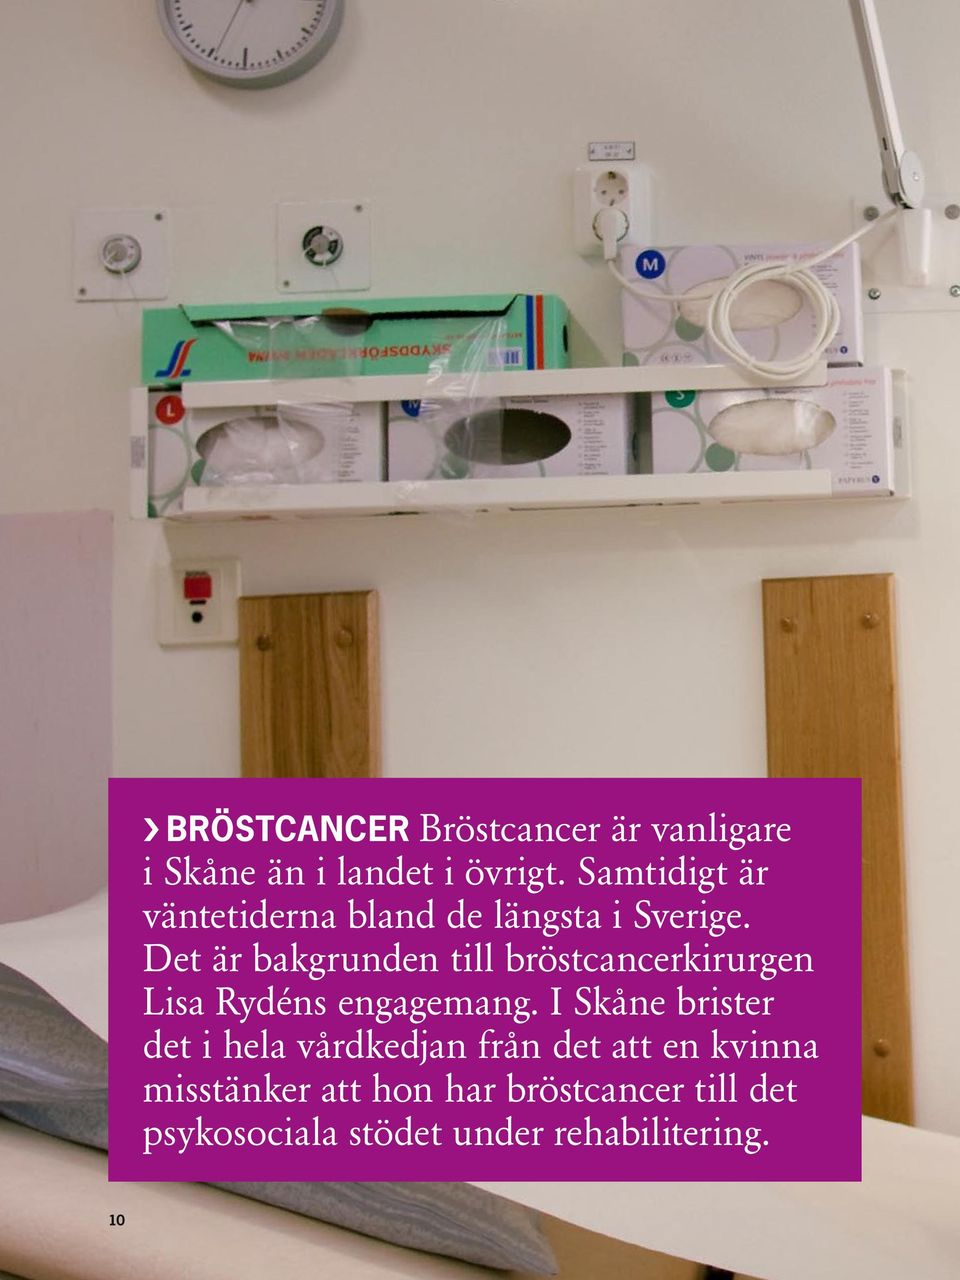 Det är bakgrunden till bröstcancerkirurgen Lisa Rydéns engagemang.